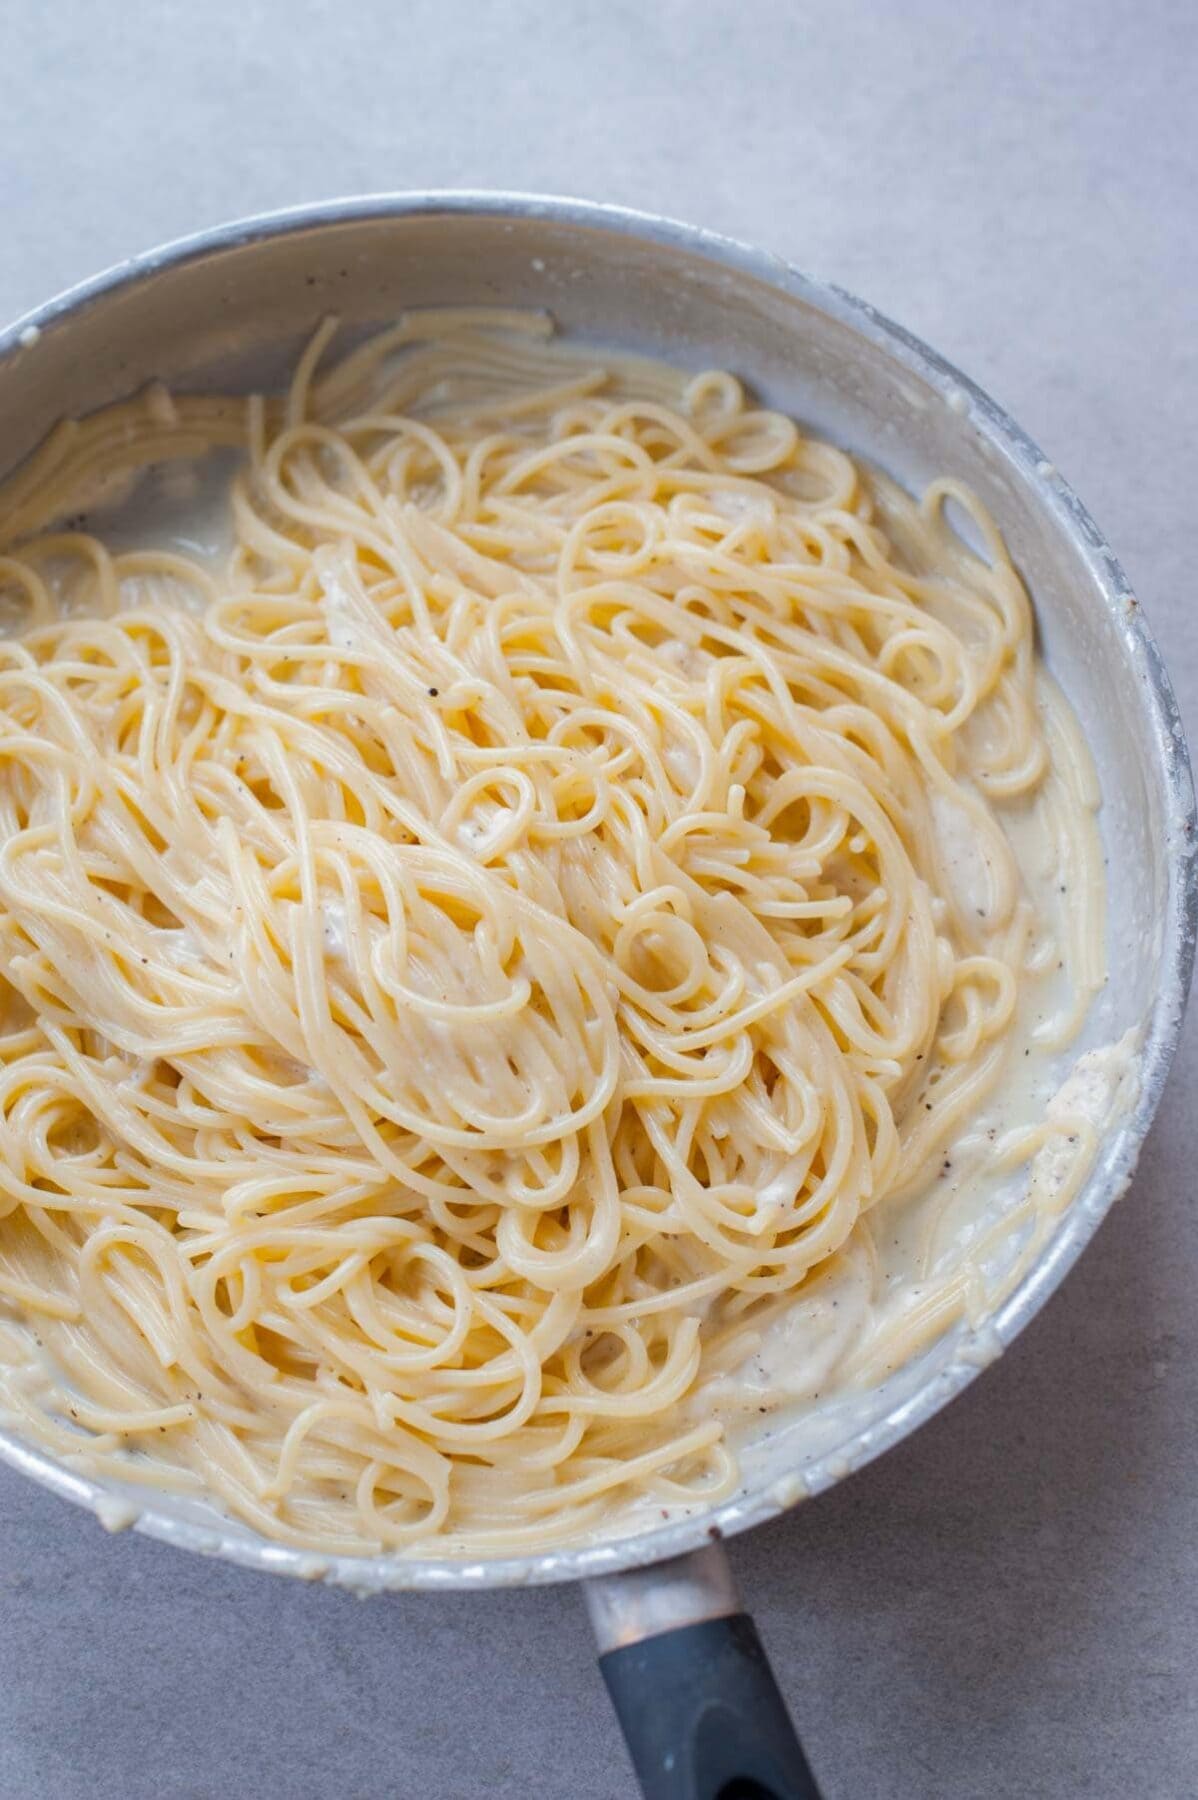 Spaghetti cacio e pepe in a metal pan.